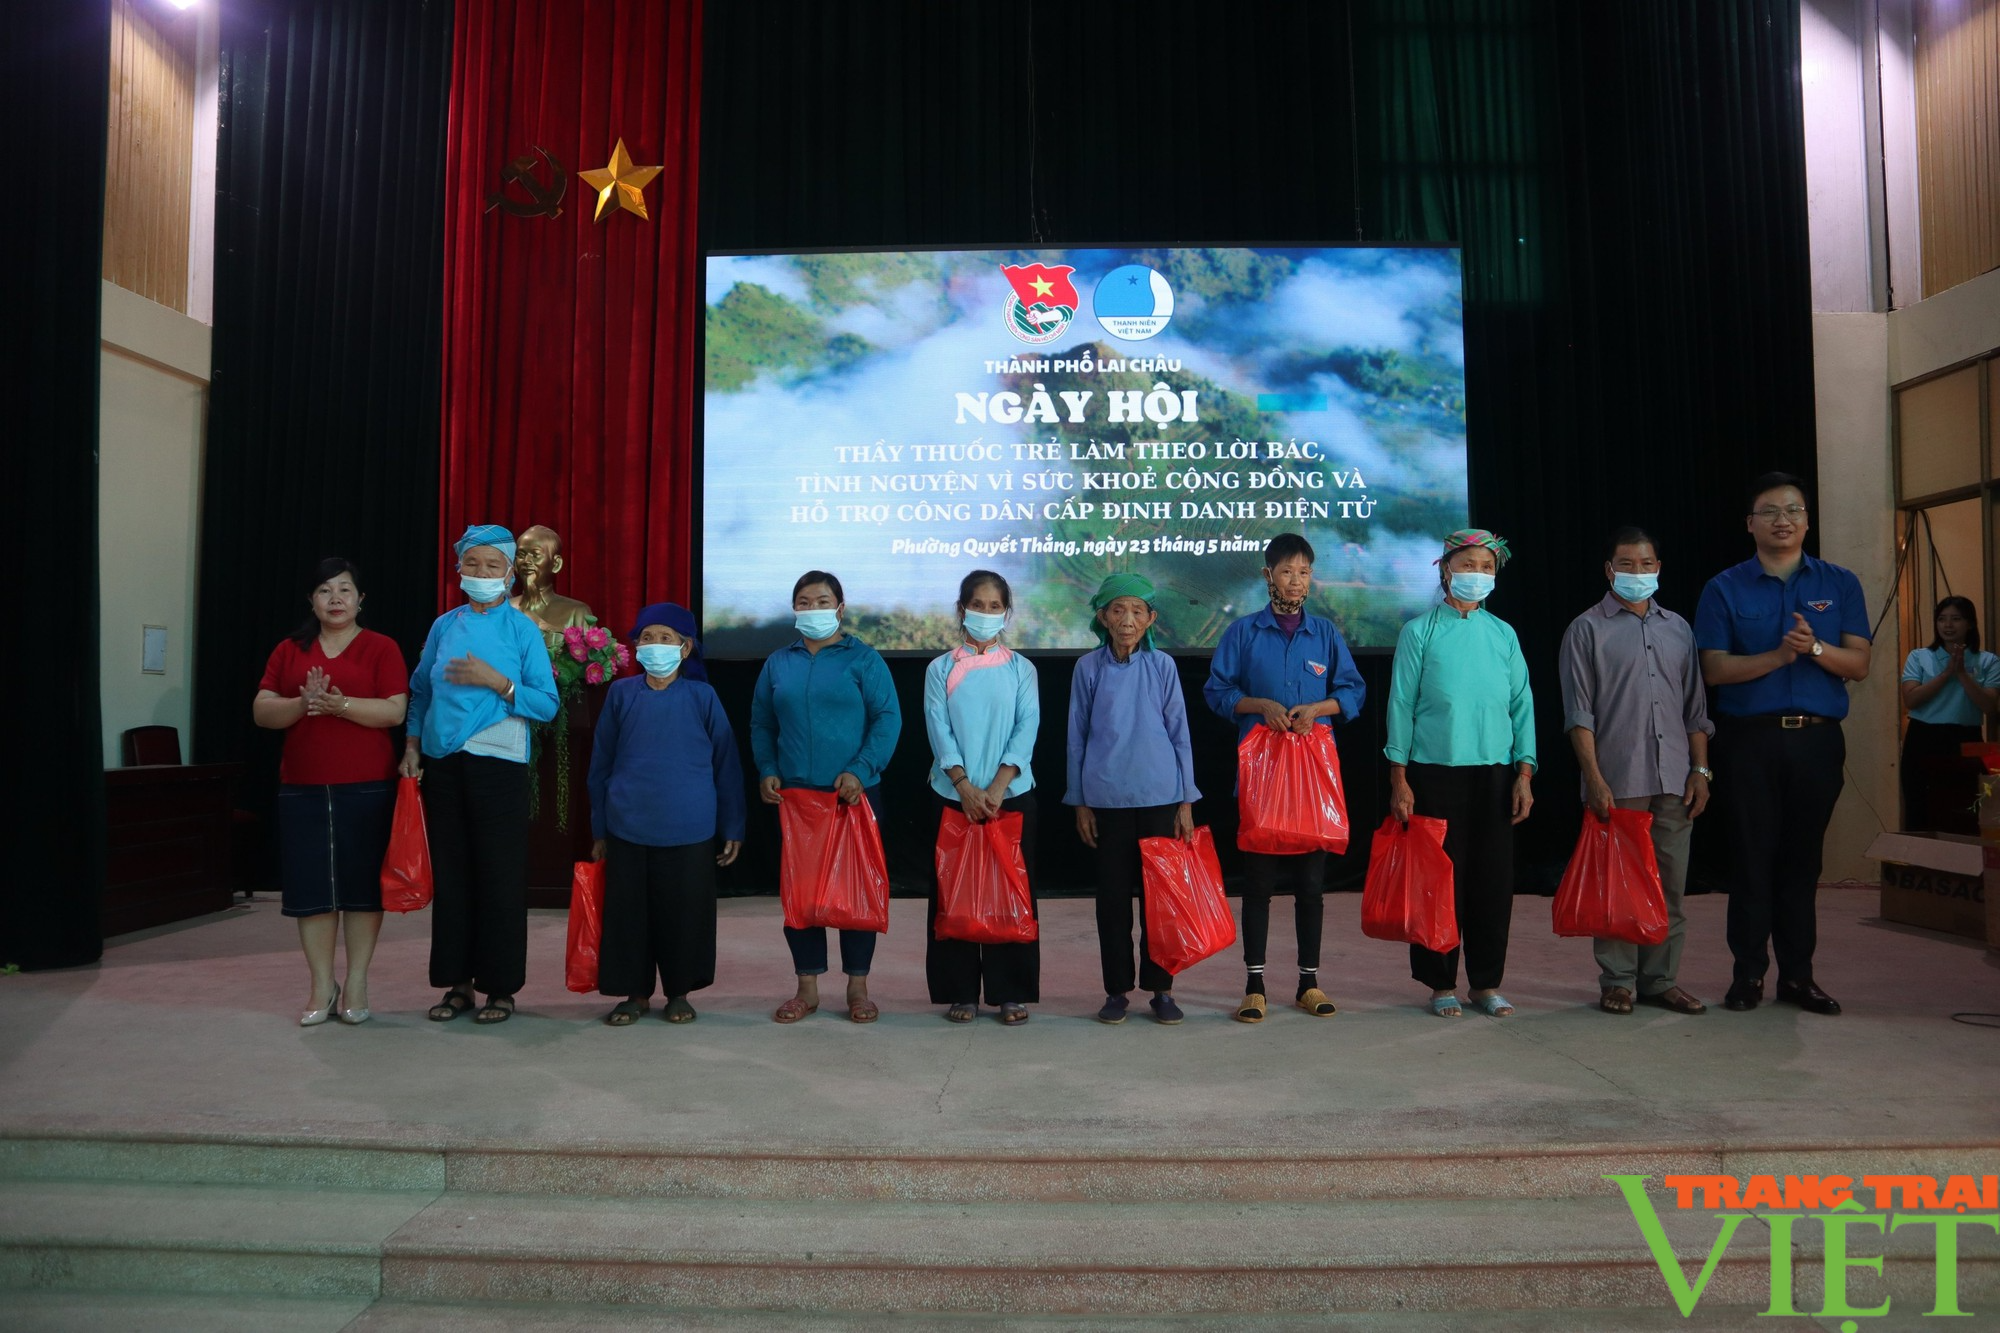 Lai Châu: Ngày hội Thầy thuốc trẻ tình nguyện vì sức khỏe cộng đồng - Ảnh 3.